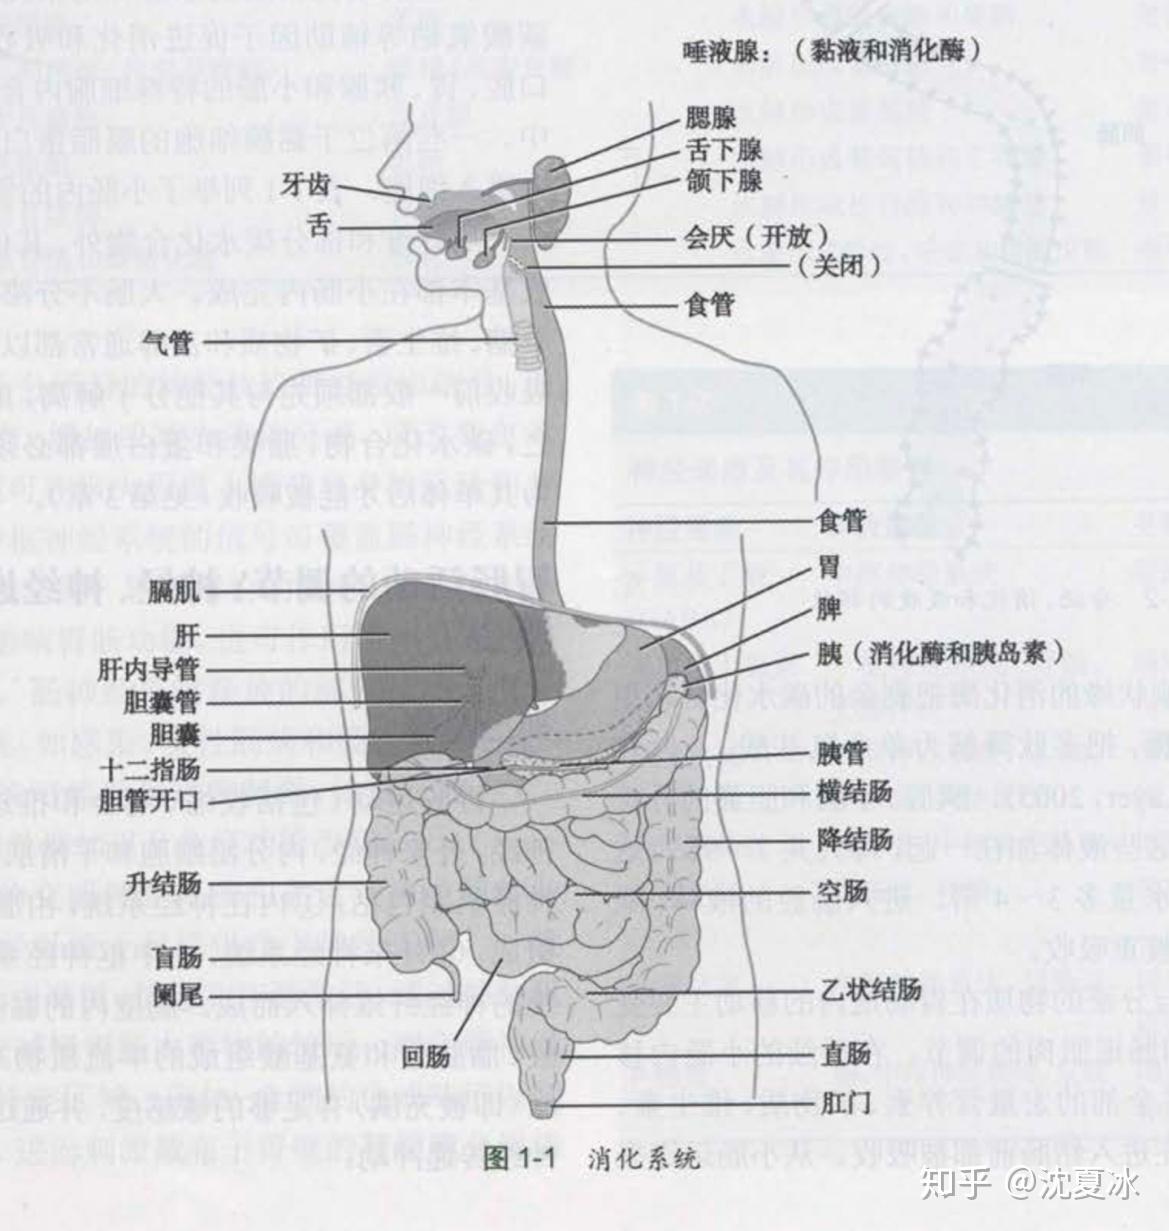 消化系统模型_系统解剖模型 人体消化系统解剖 肝 胃大肠 - 阿里巴巴